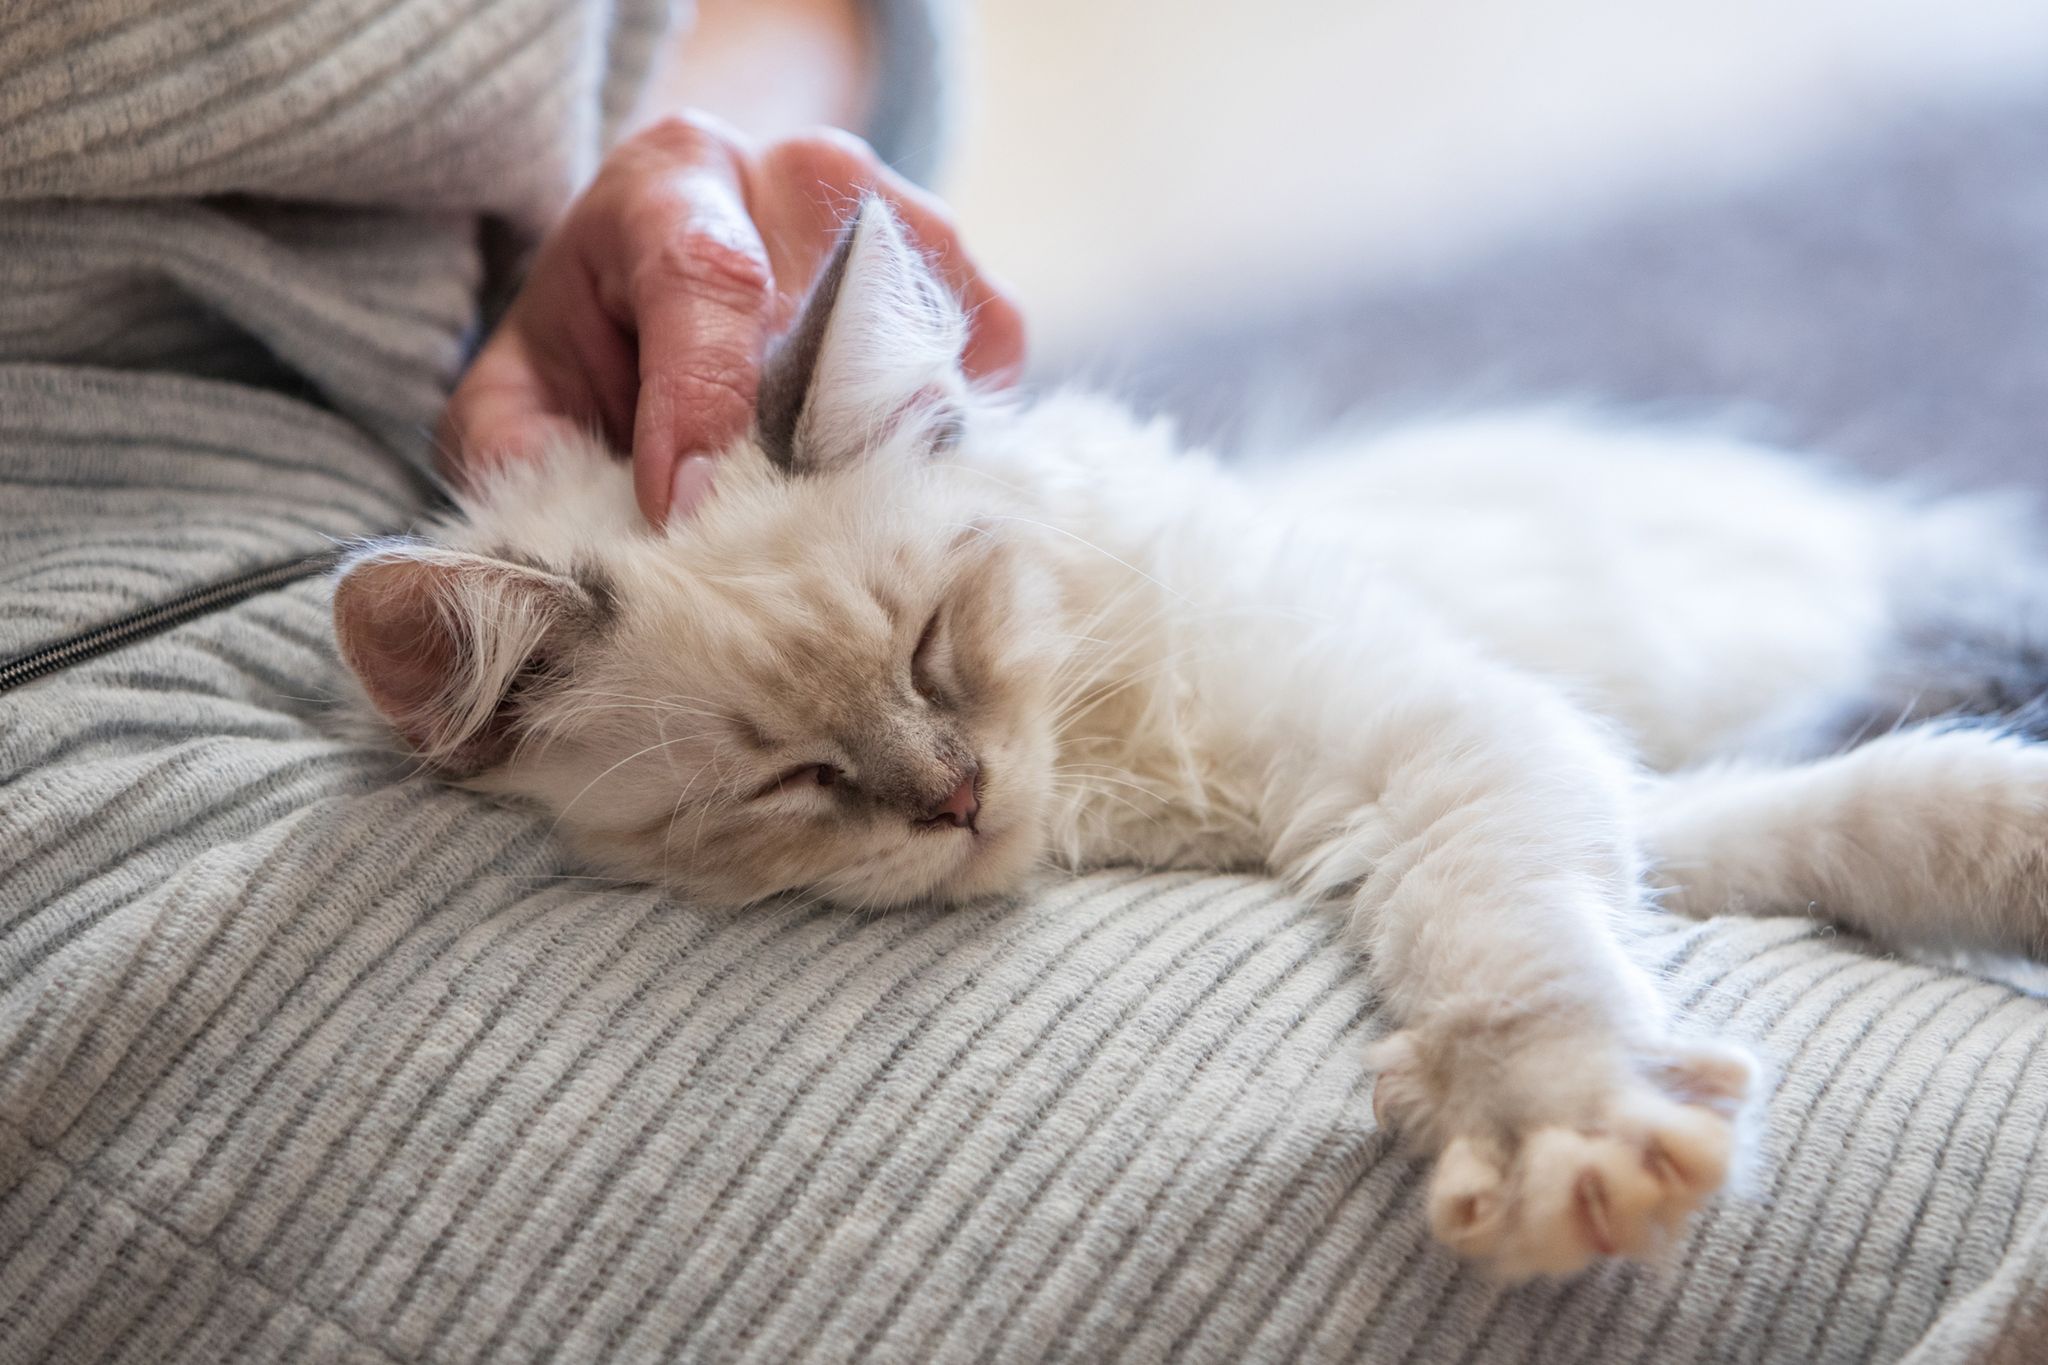 Katzen schnurren wenn sie entspannt sind, aber auch in stressigen Situationen.